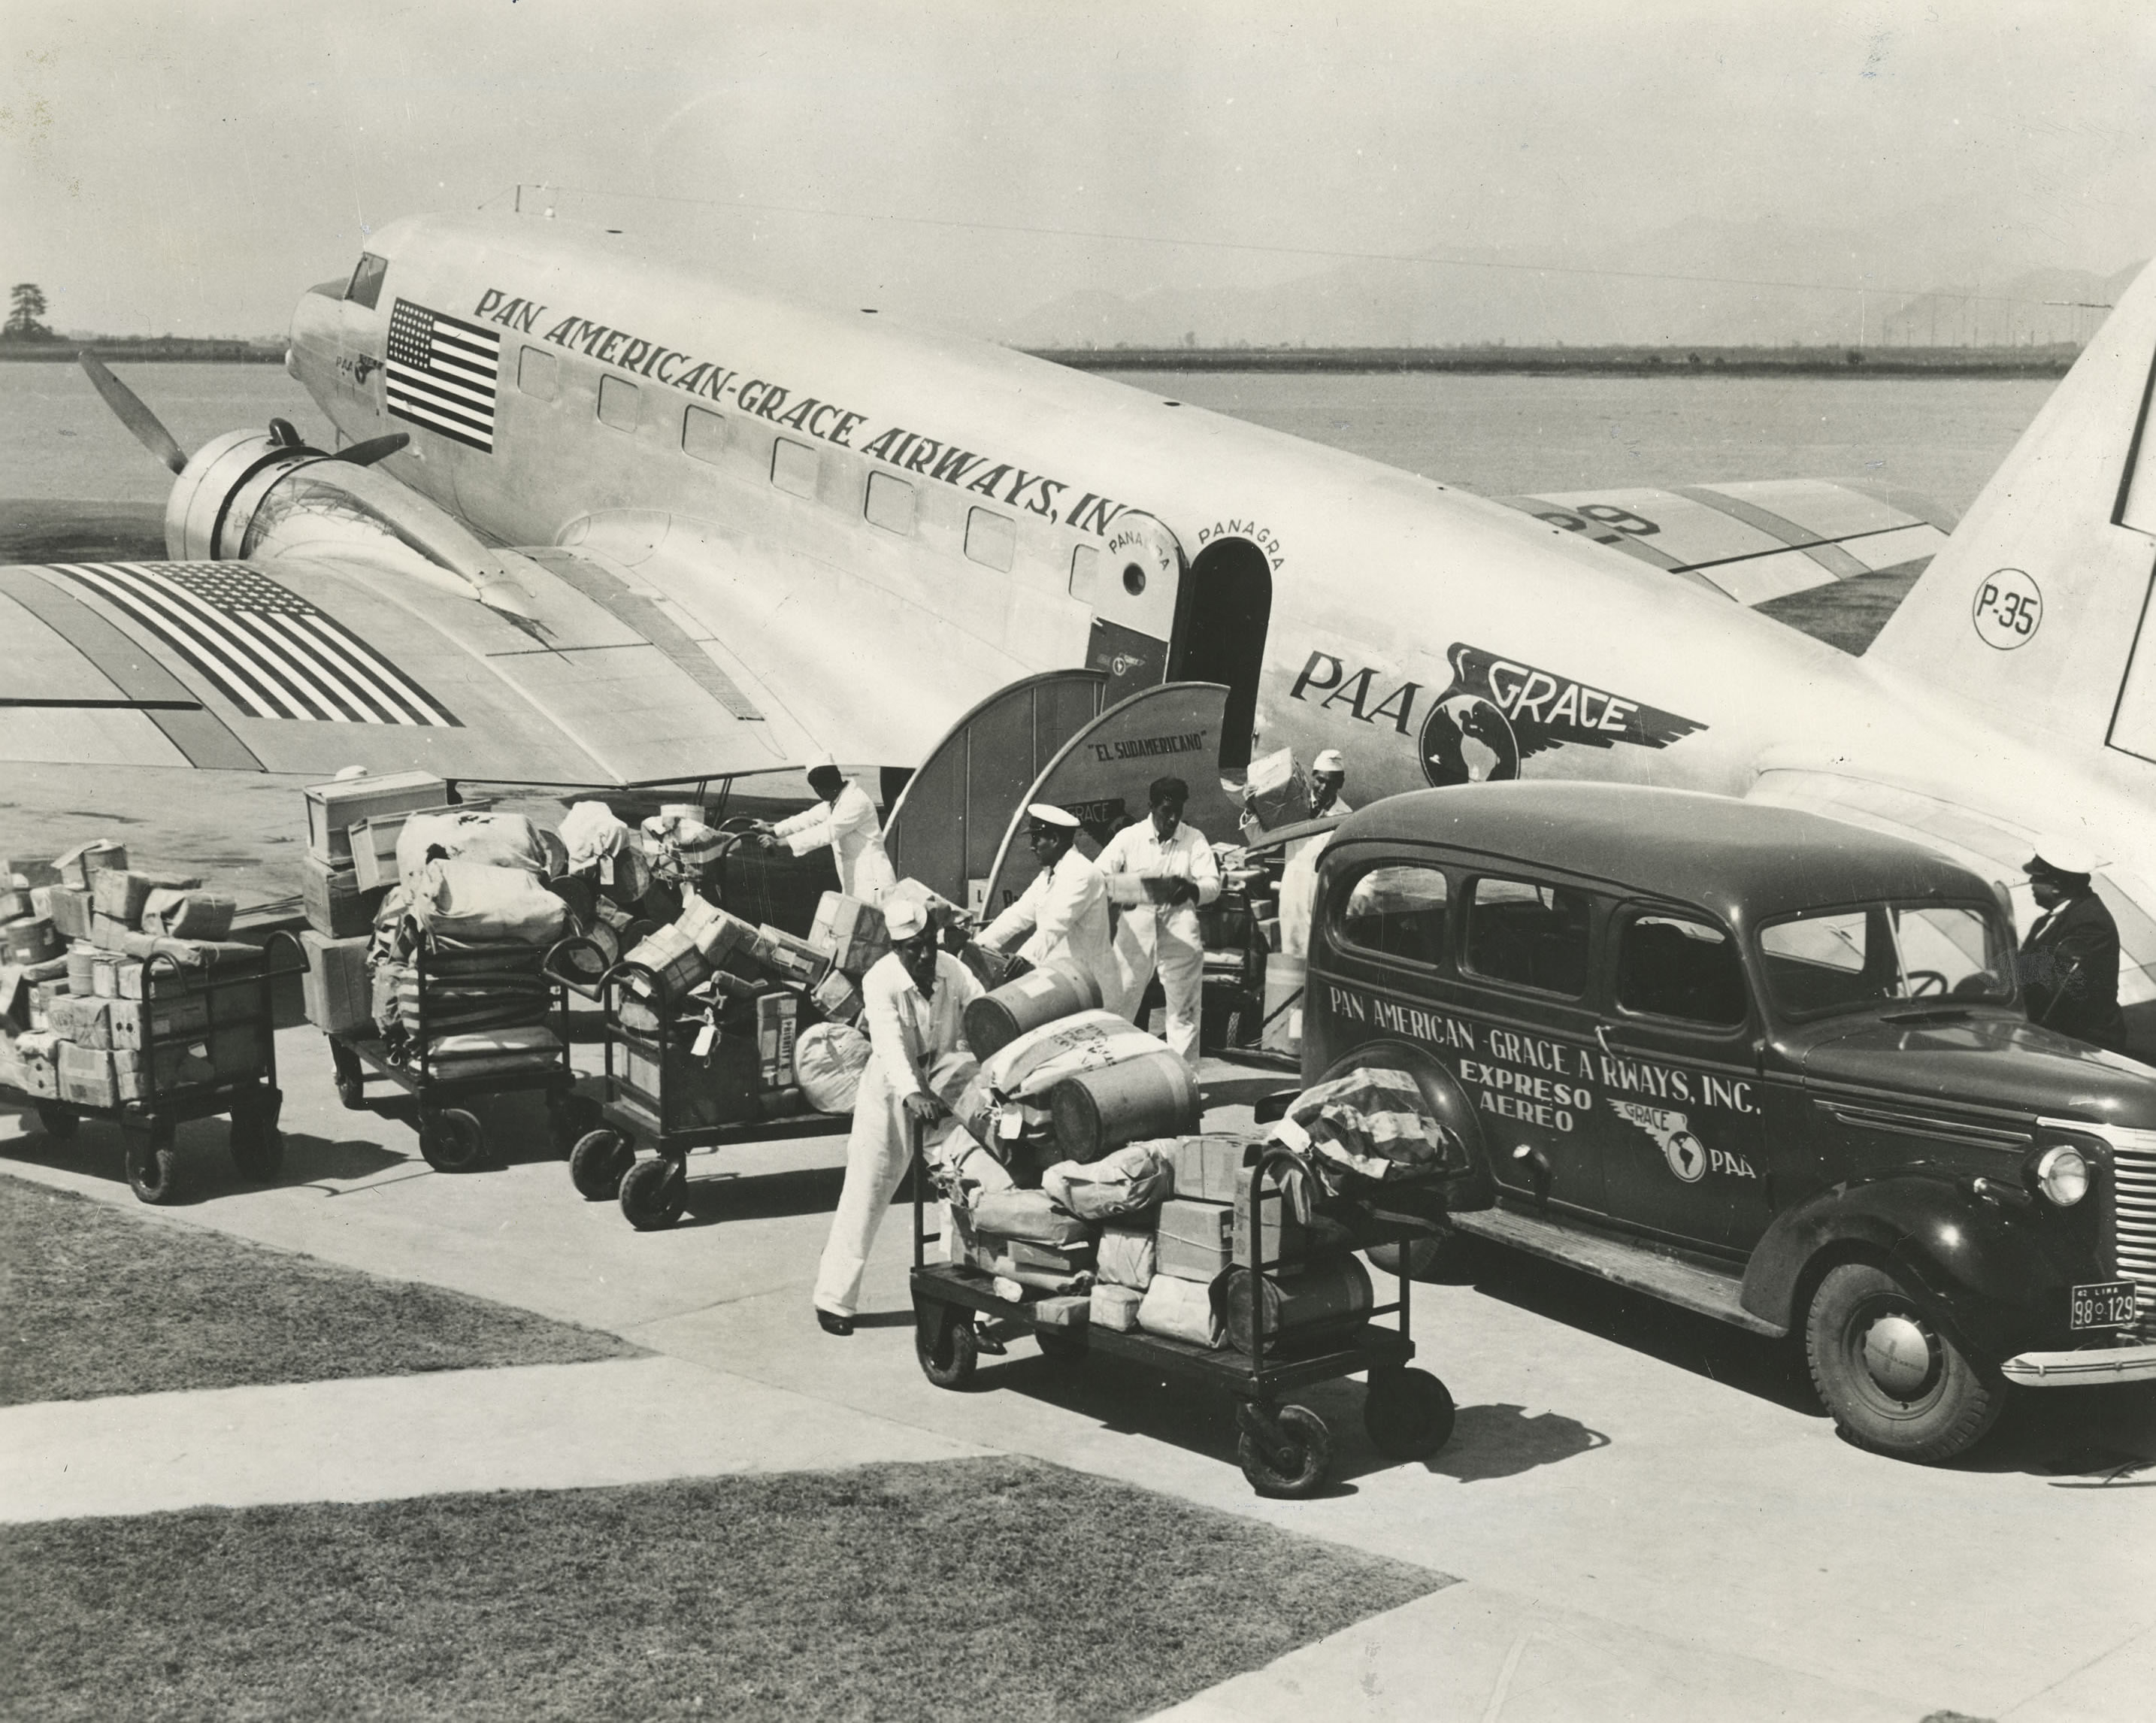 Pan Am Flight 1-10 - Wikipedia